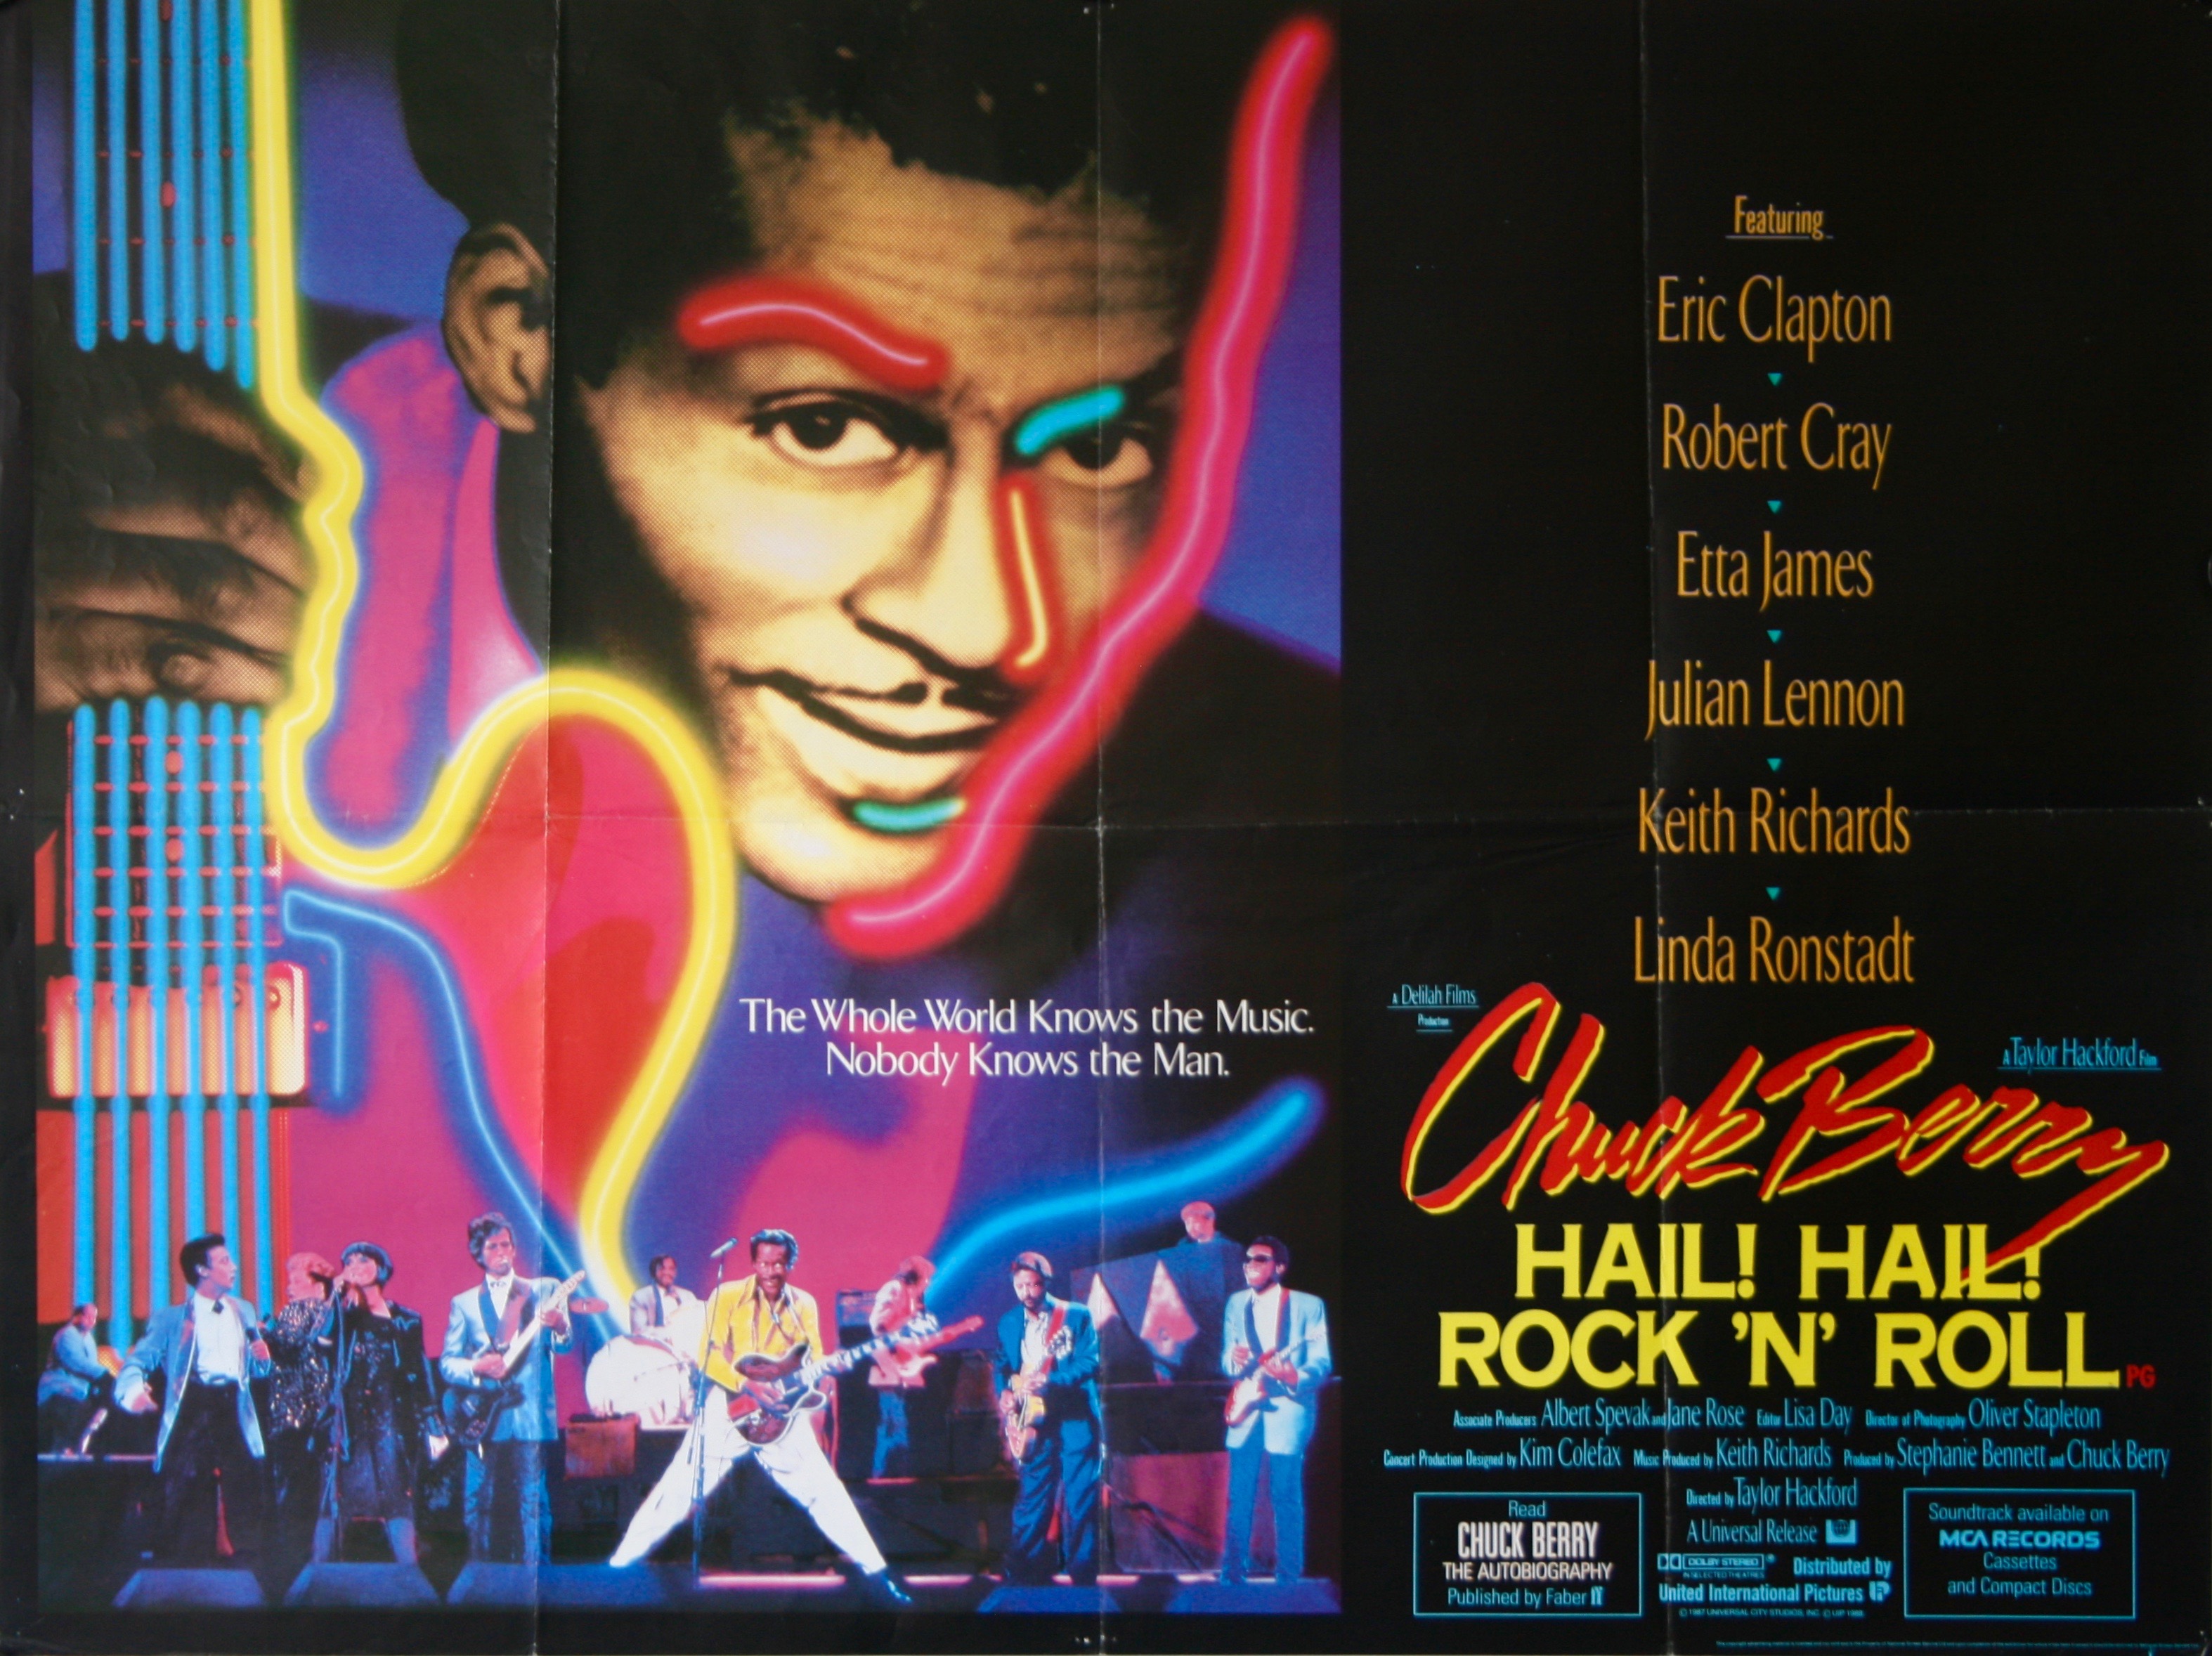 Chuck Berry Hail Hail Rock 'n' Roll Movie Poster Replica 13x19" Photo Print 